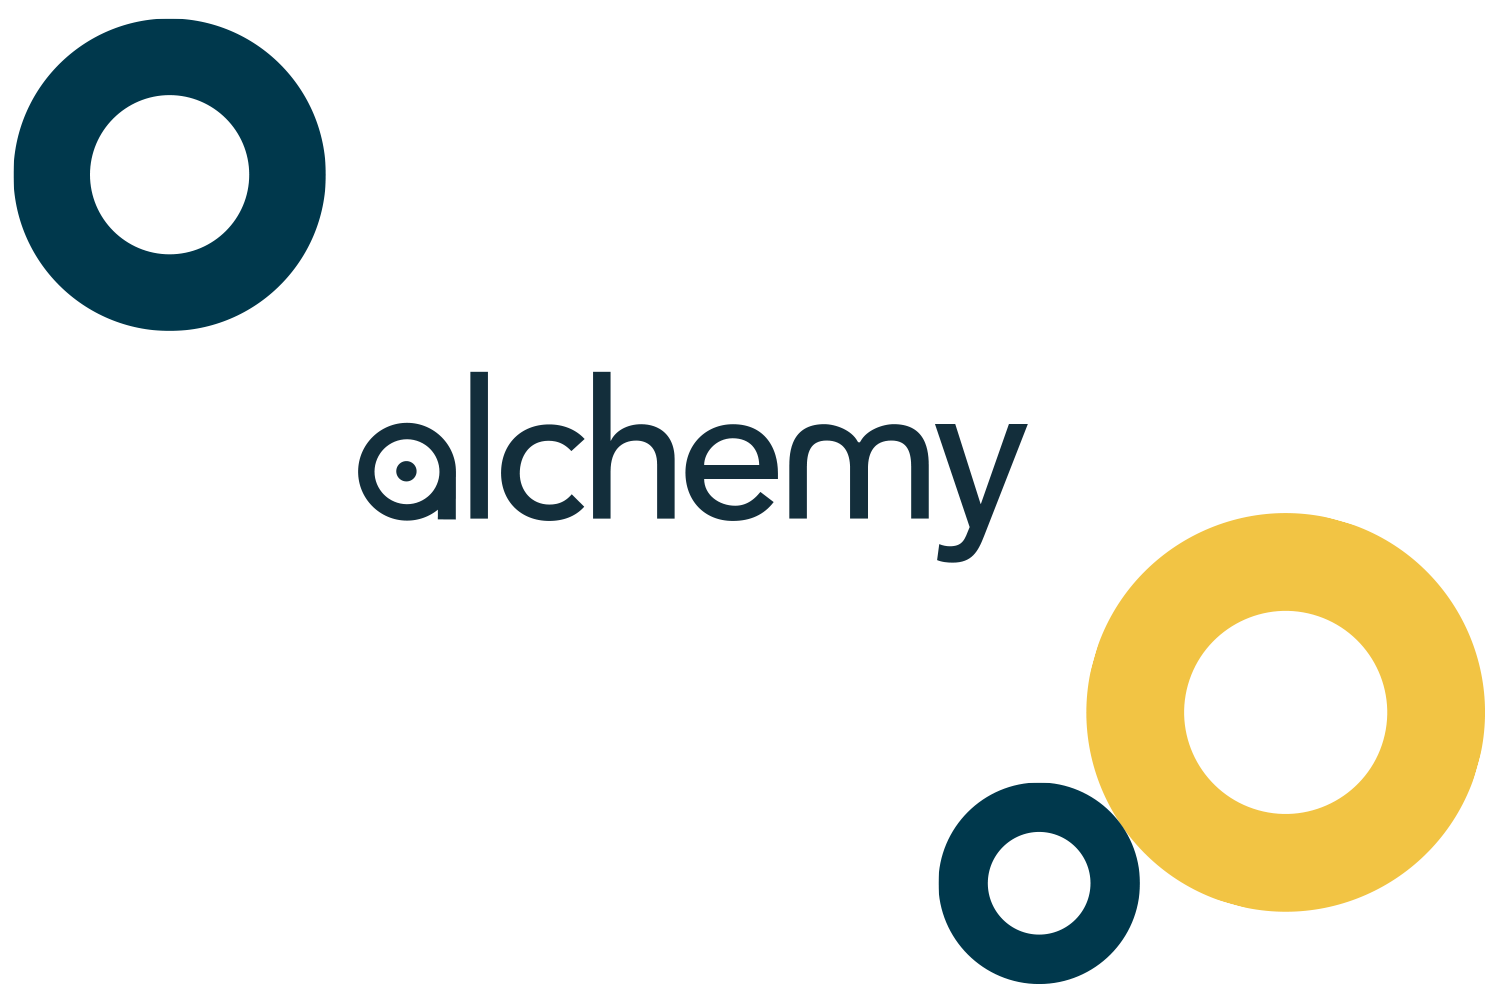 Alchemy Final logo - Reputation Today